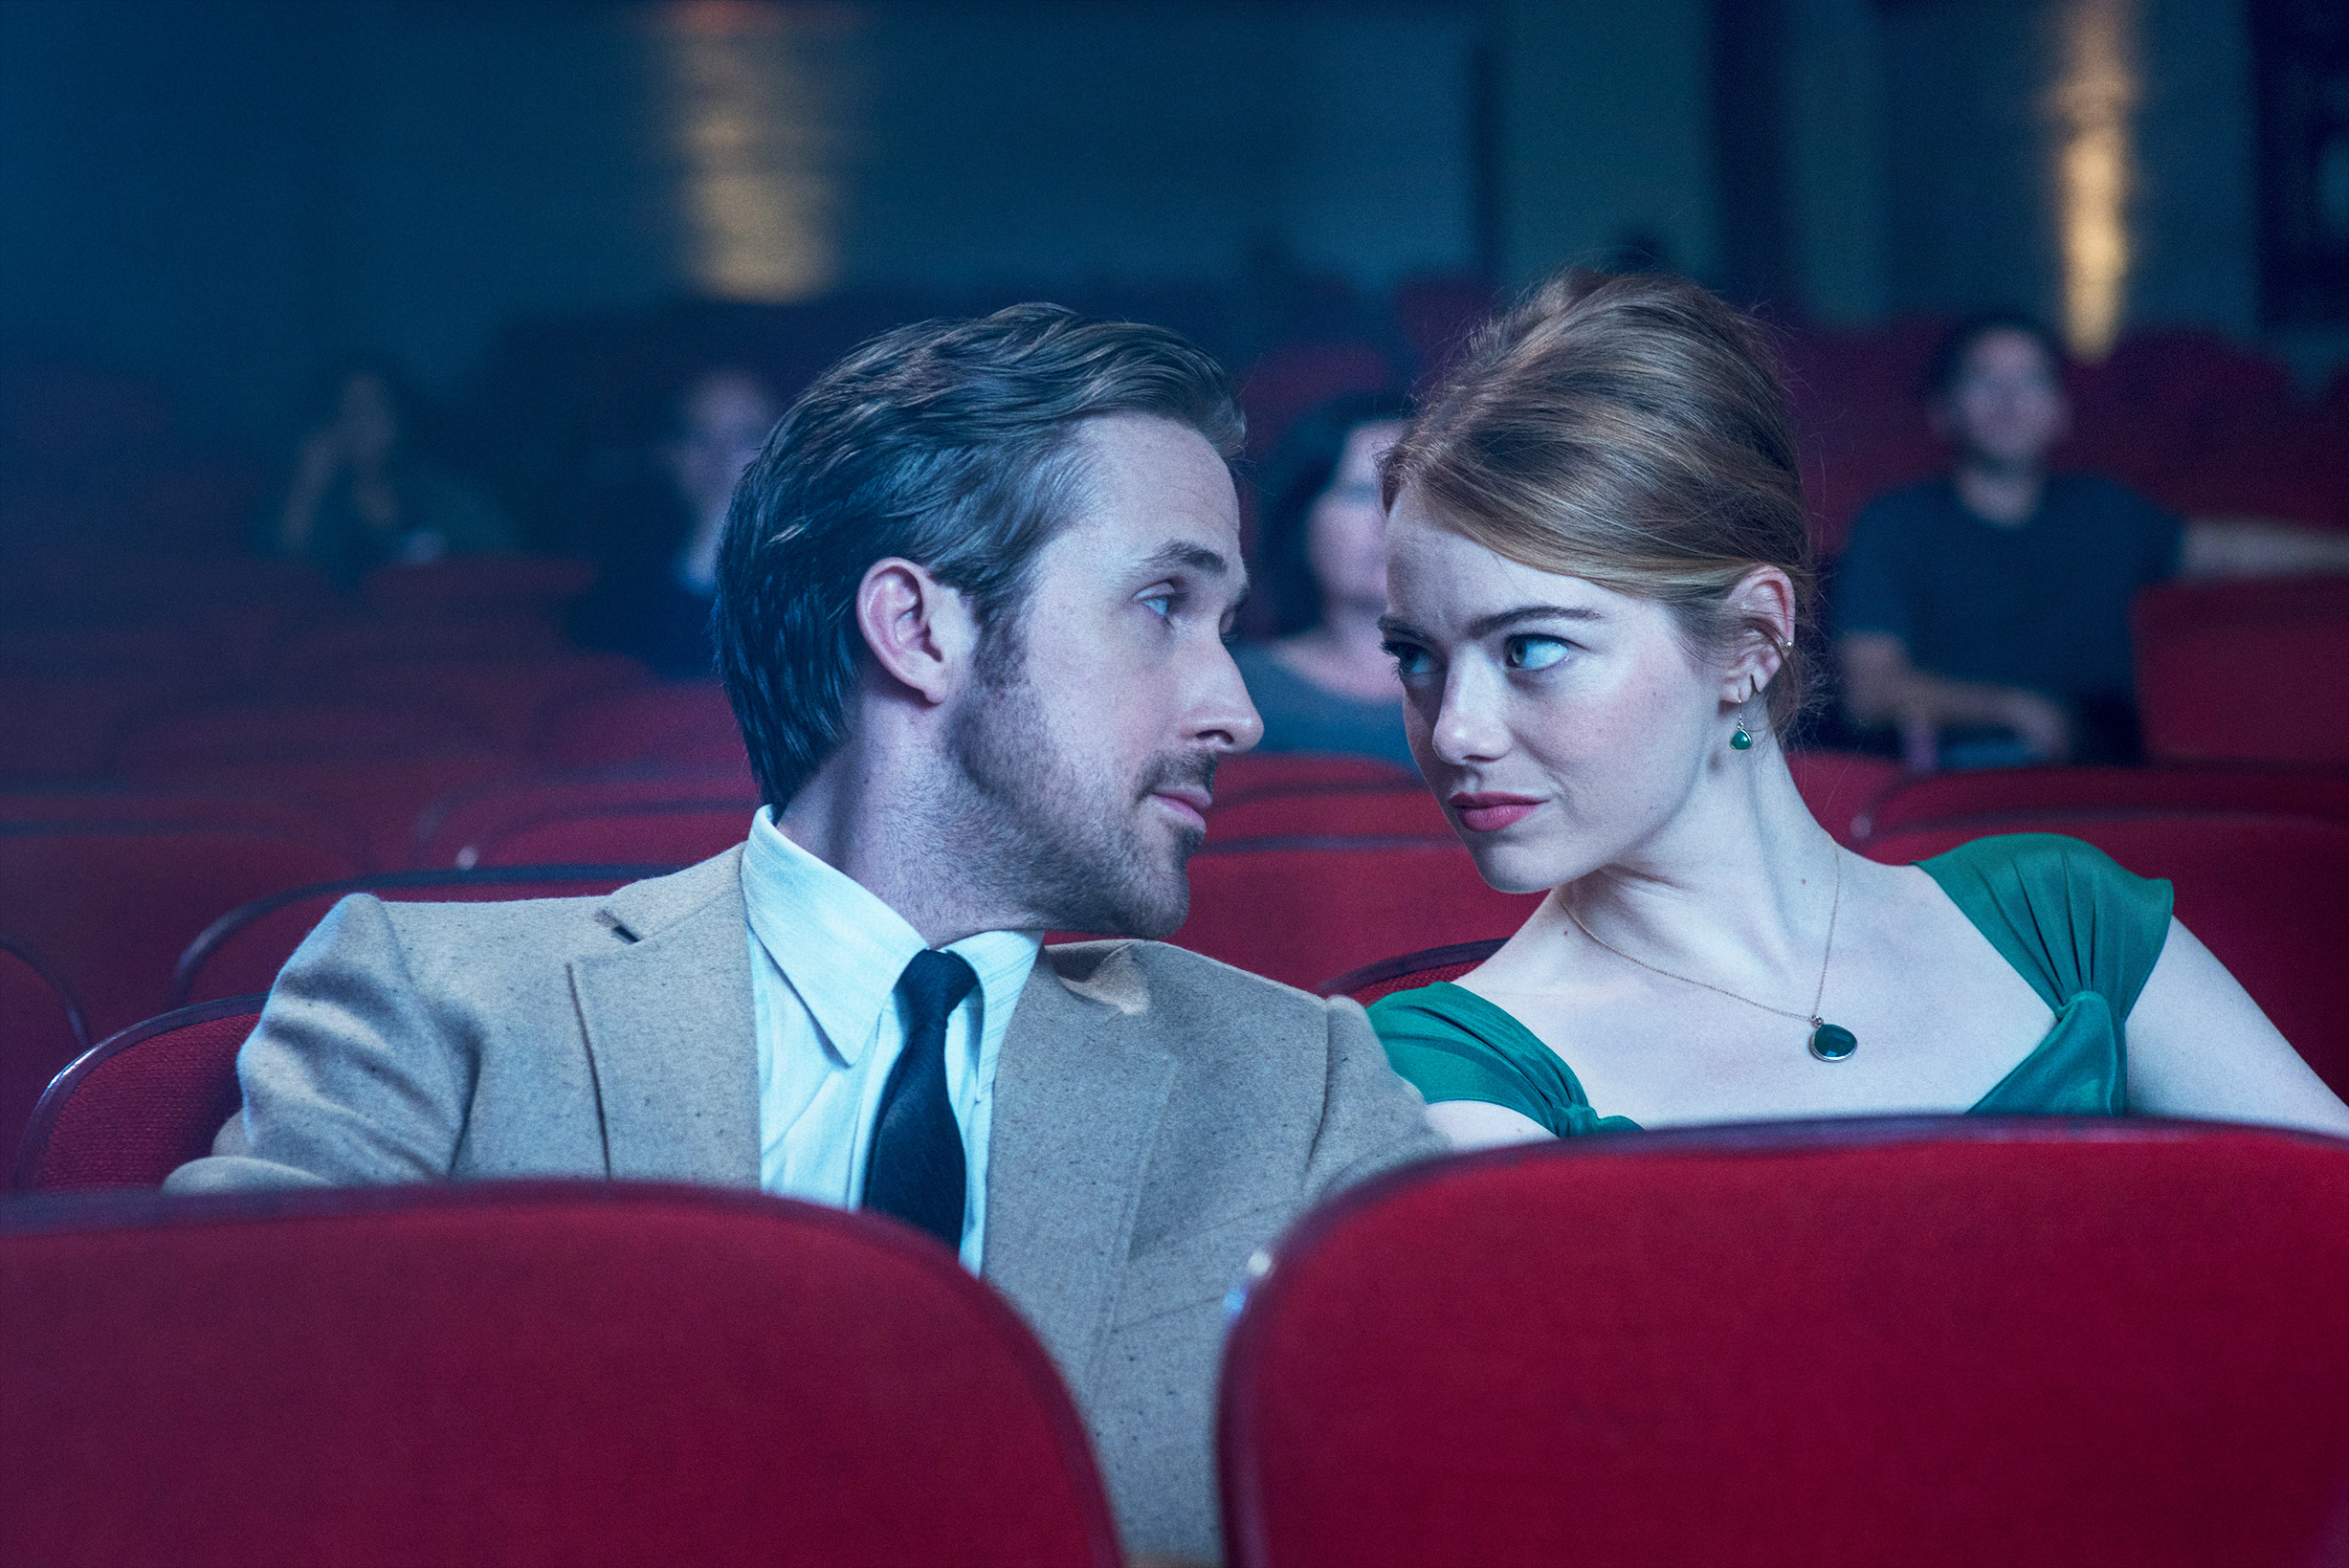 رایان گاسلینگ و اما استون در سینما در لا لا لند به یکدیگر نگاه می کنند.